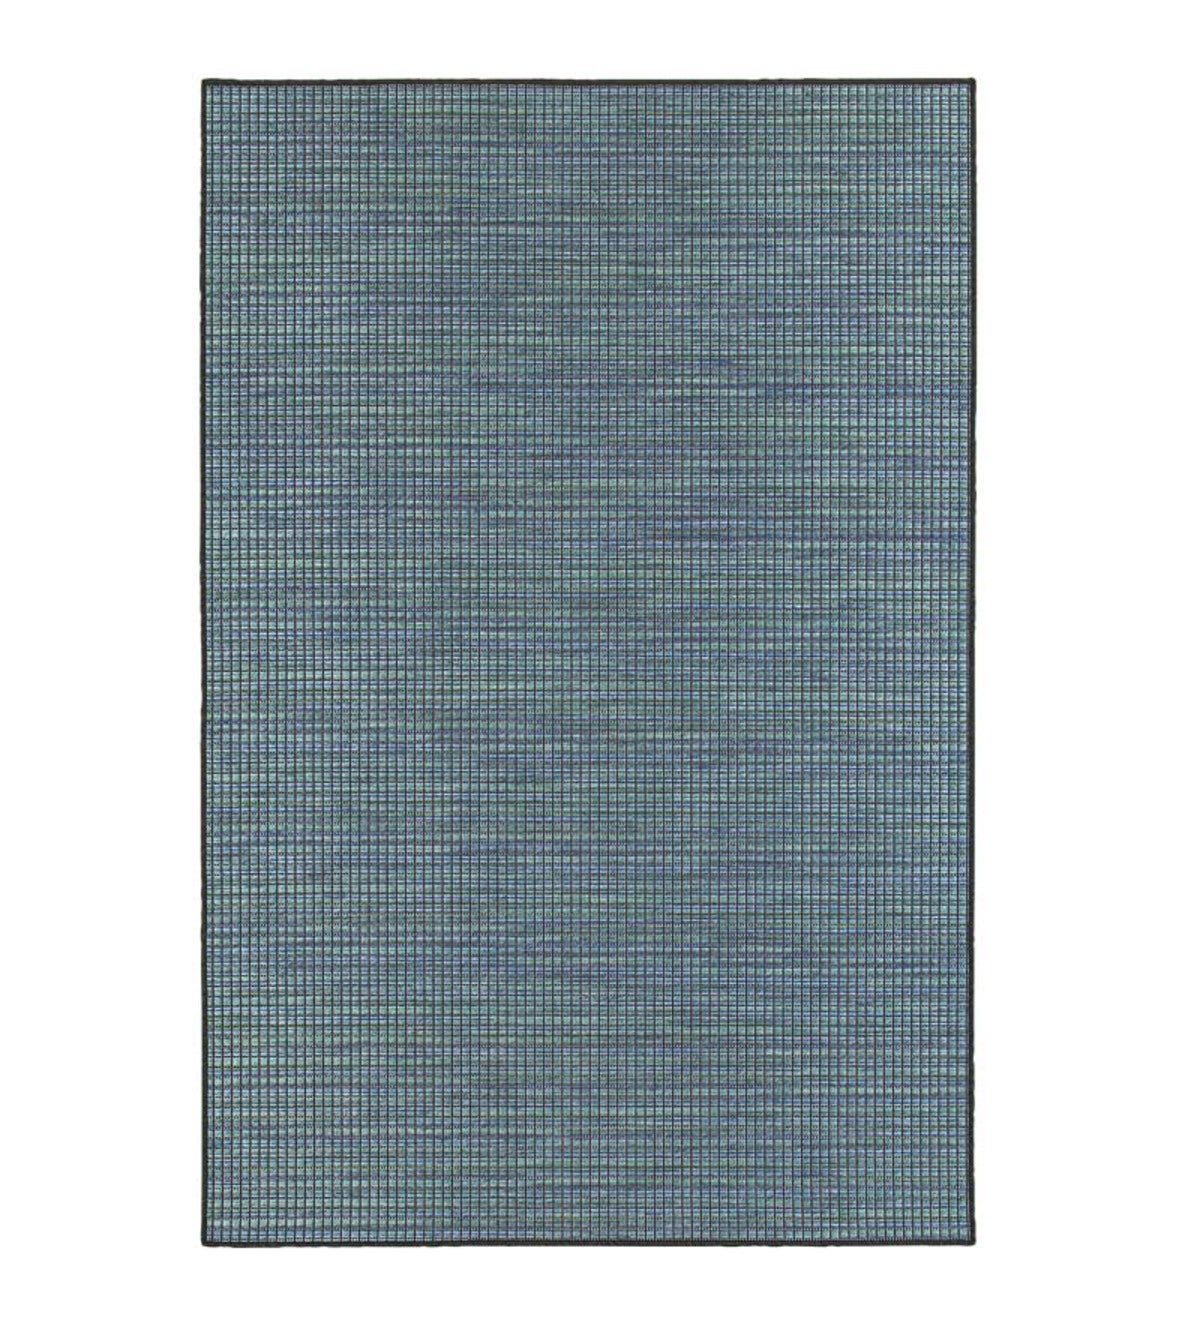 Elements Textured Indoor/Outdoor Rug, 6'7”x 9'6” - Blue/Tan